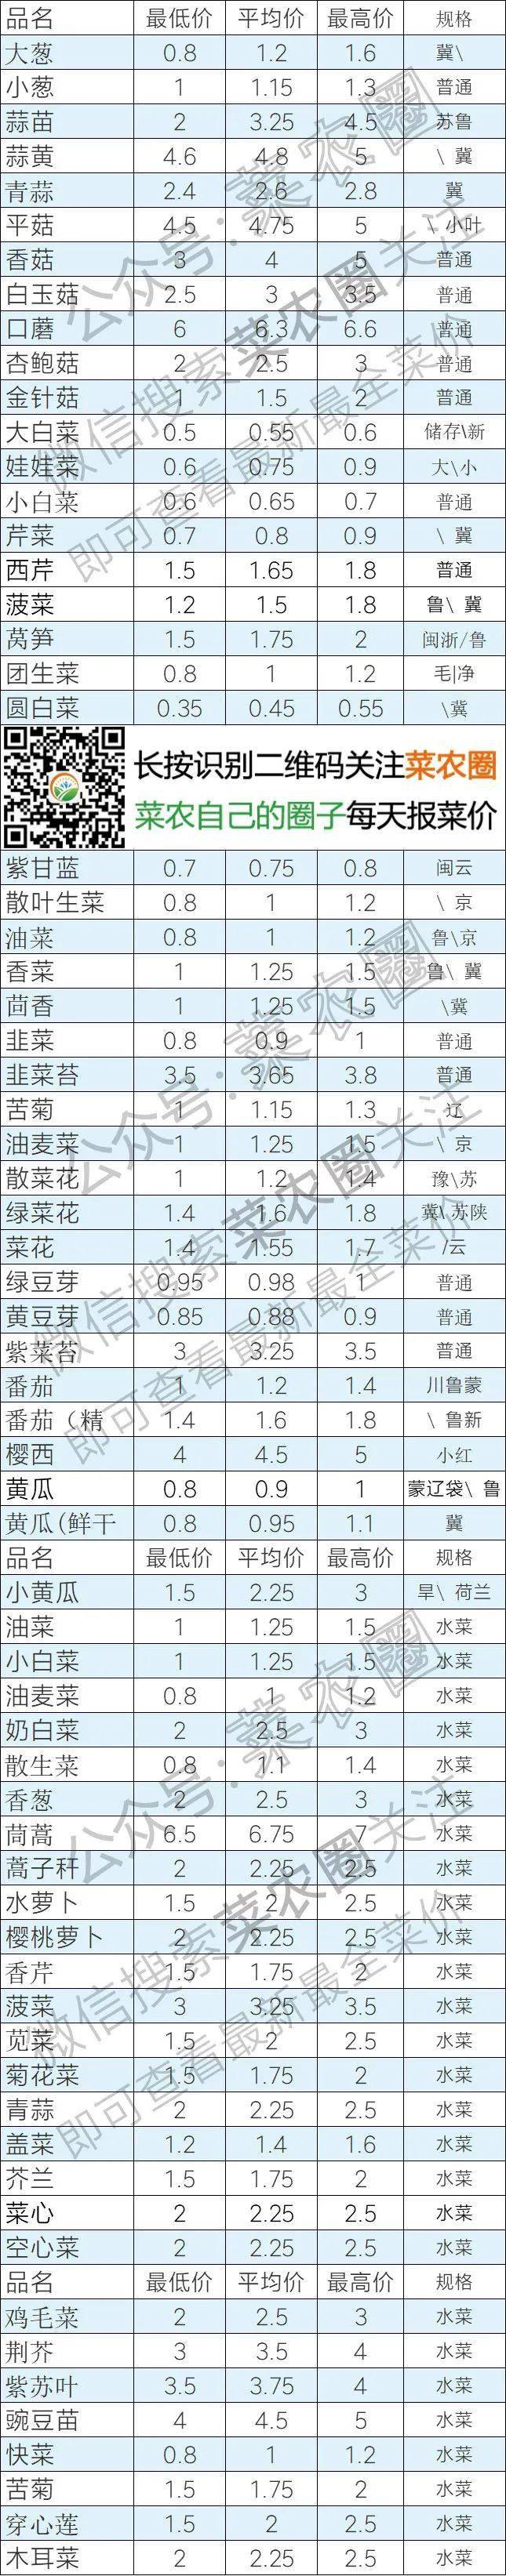 2021年6月3日北京新发地,山东寿光,云南,河北石家庄今日蔬菜价格行情一览表